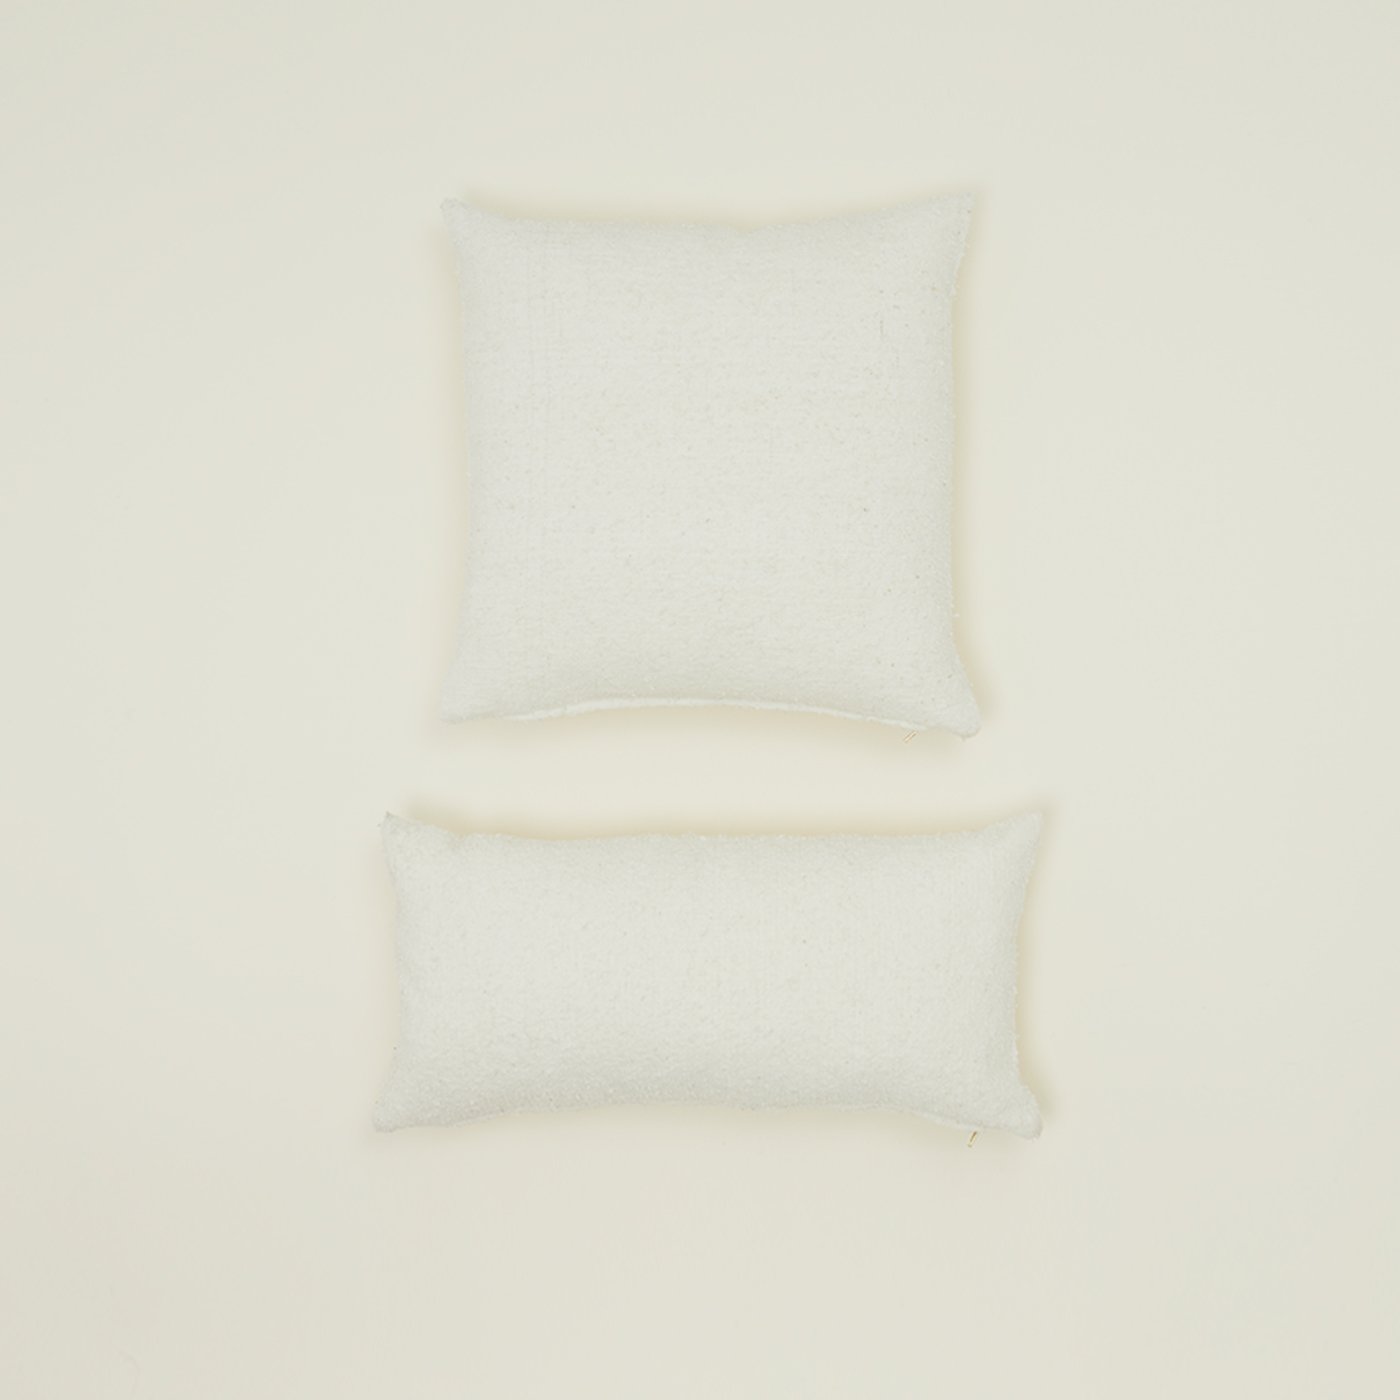 Couscous 20x20 Pillow - Ivory